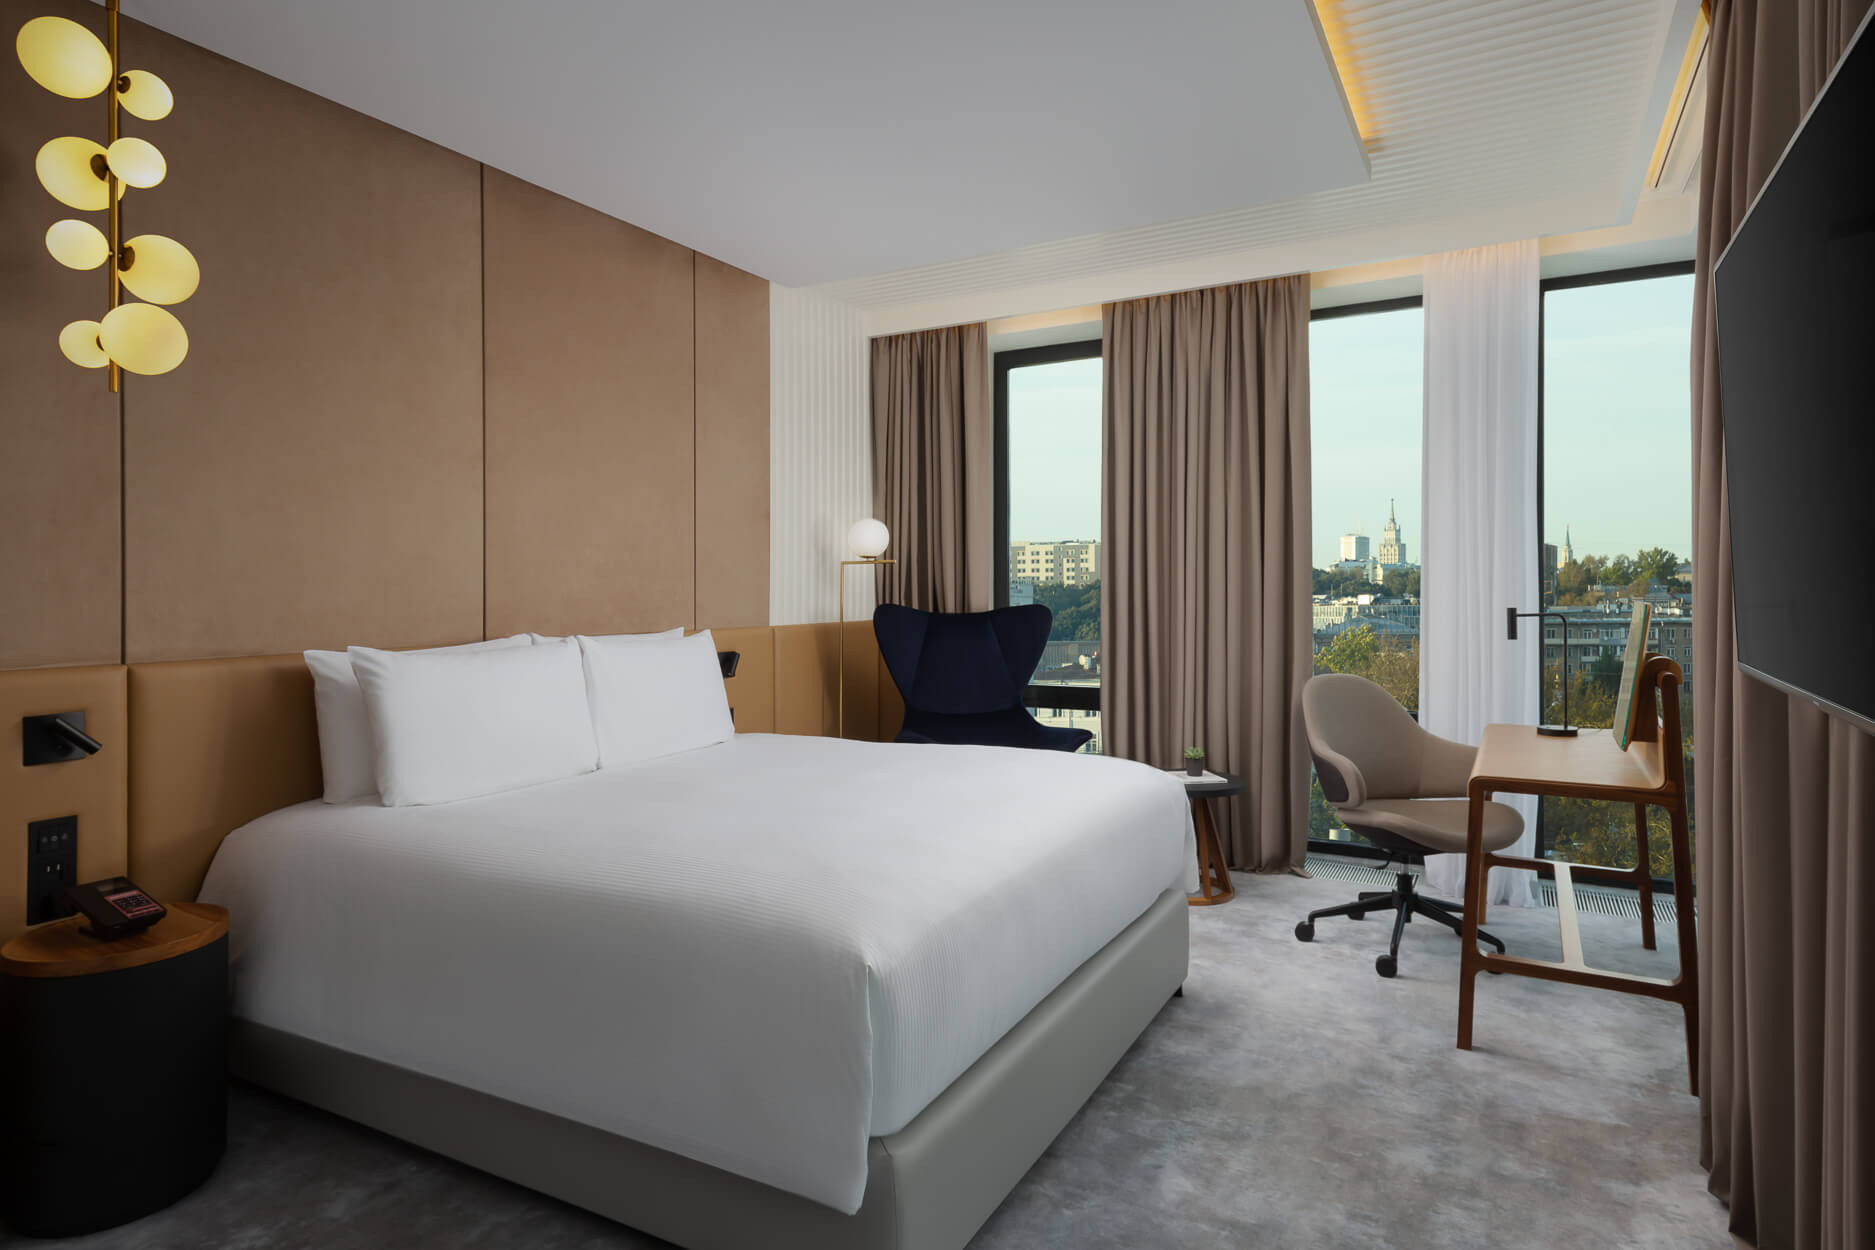 В спальне: кровать застелена белоснежным бельем, большие панорамные окна.